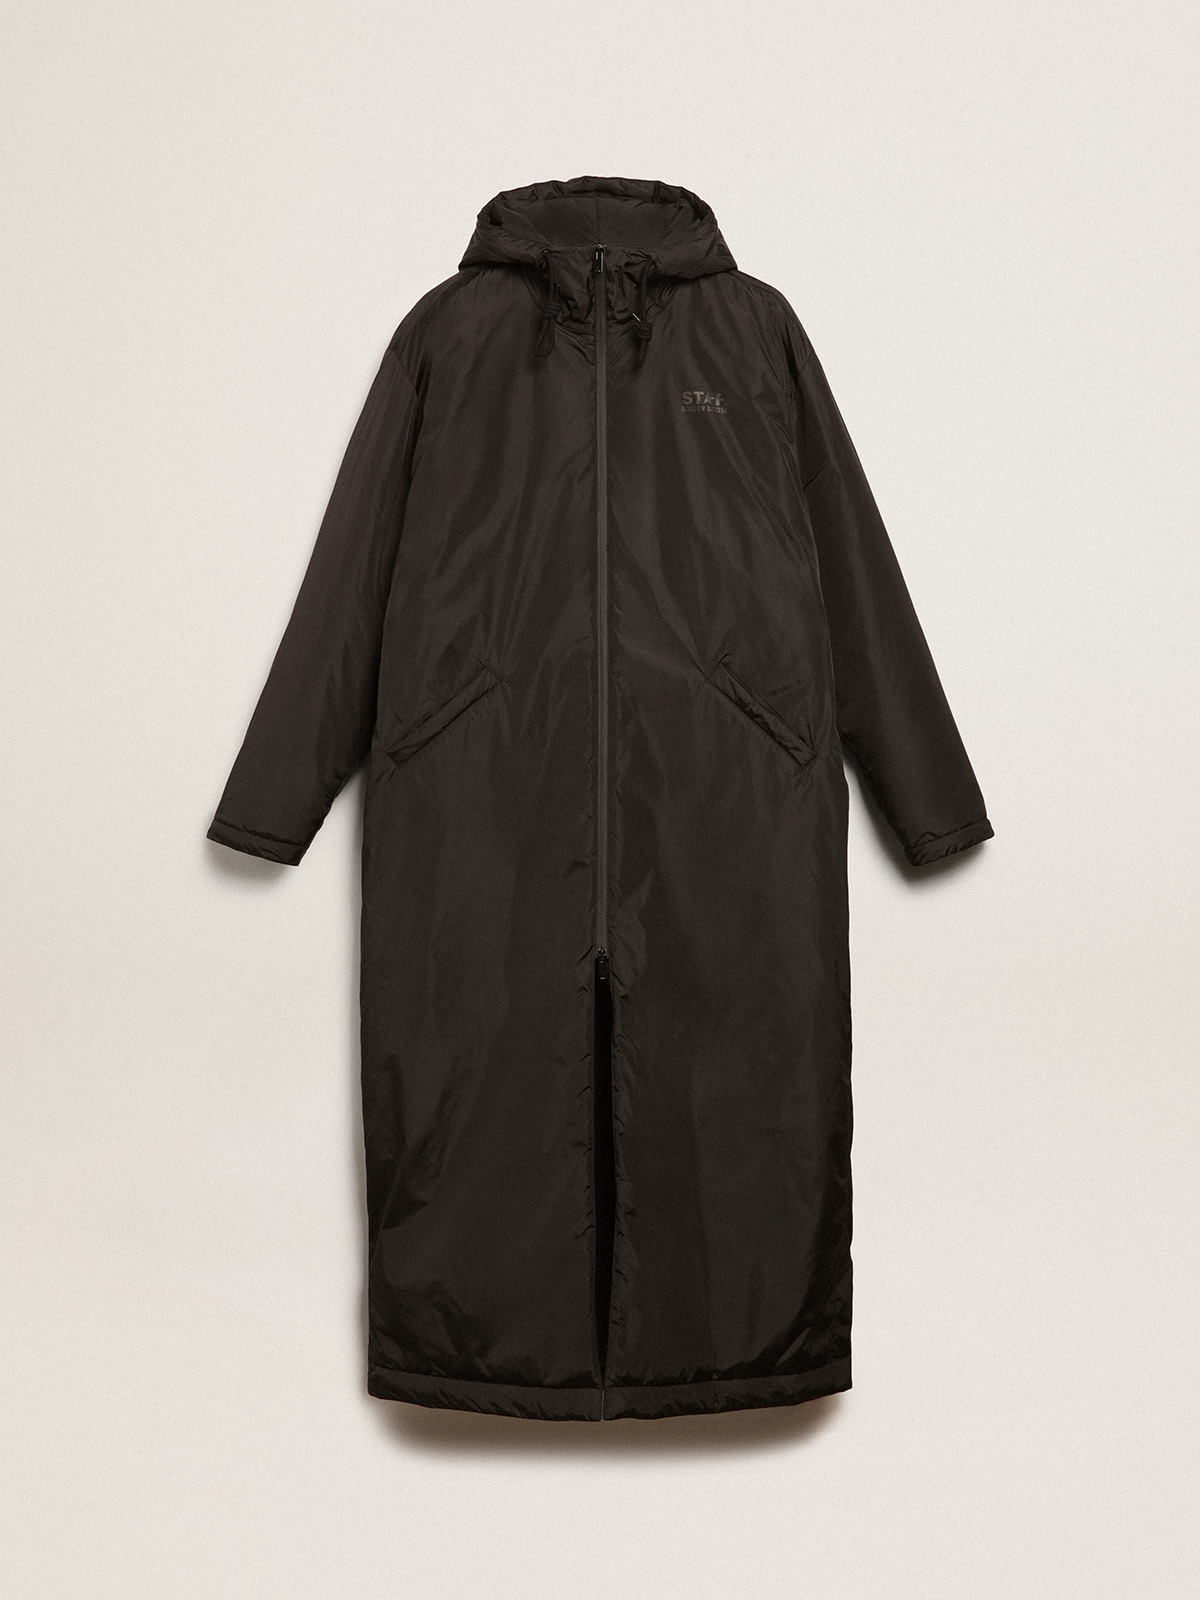 Soul Star fleece lined denim jacket in black